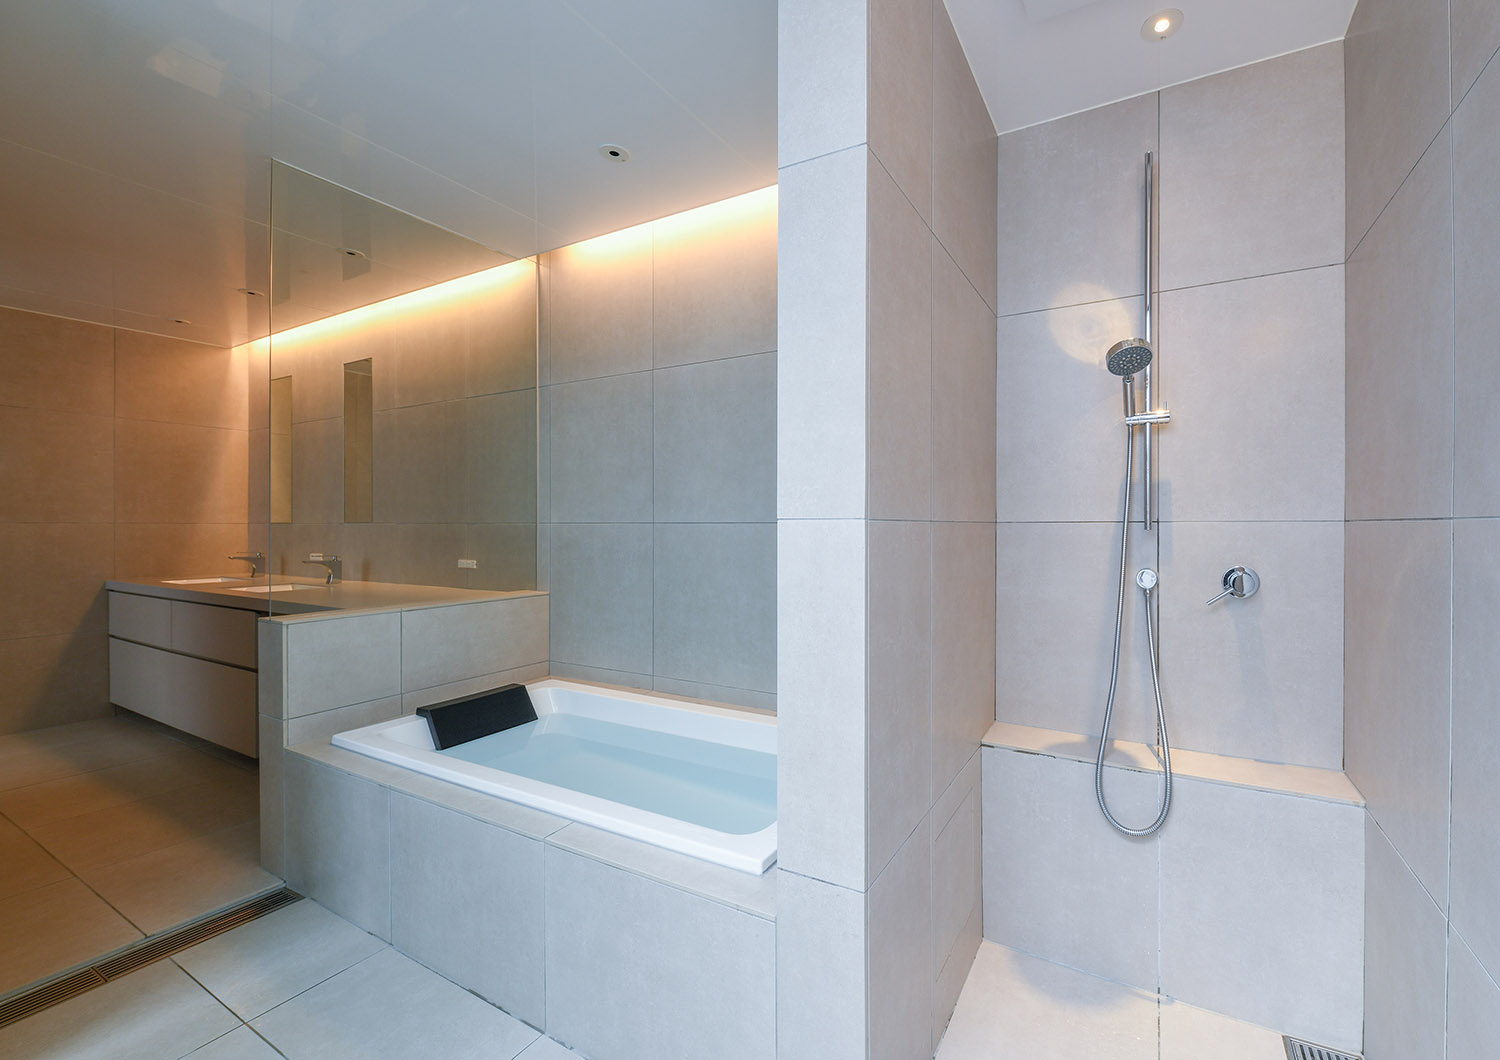 バスタブとシャワー室が壁で仕切られたホテルライクなタイルの浴室・デザイン住宅